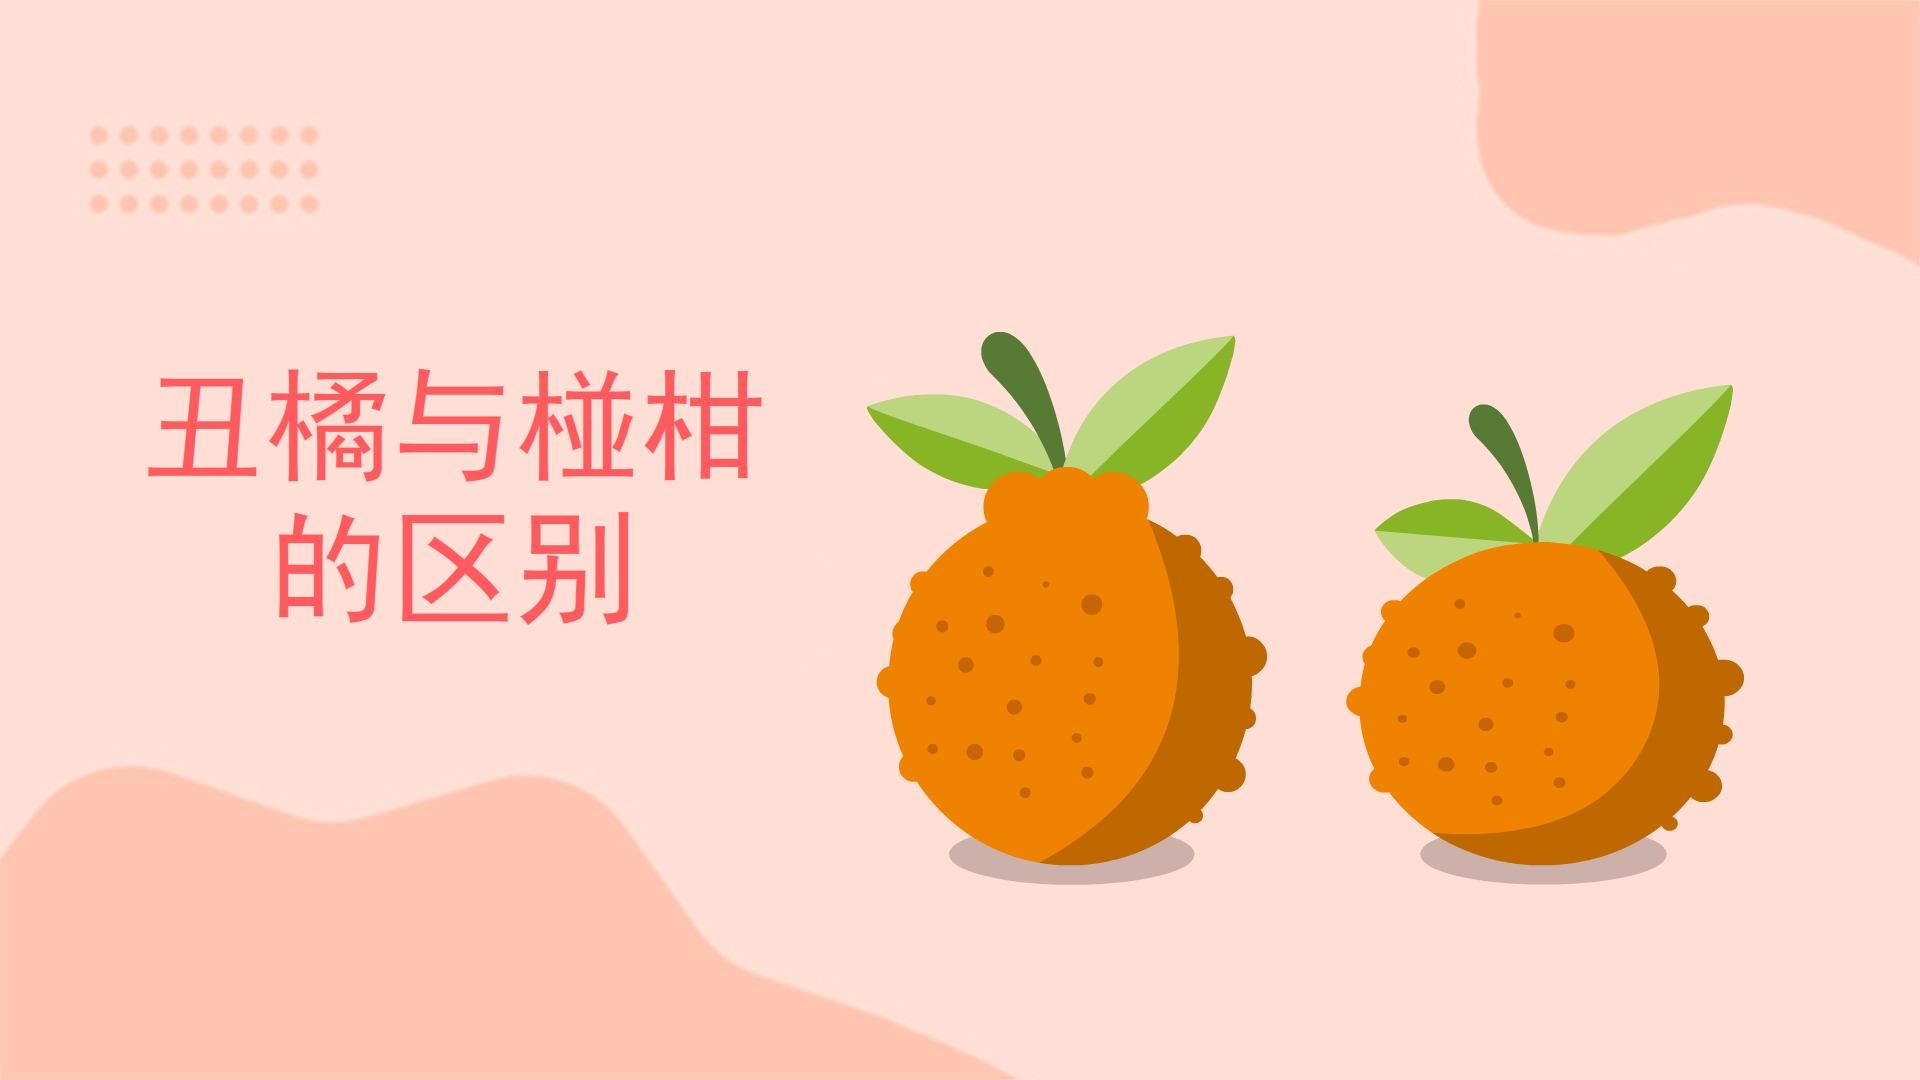 丑橘与椪柑的区别是什么